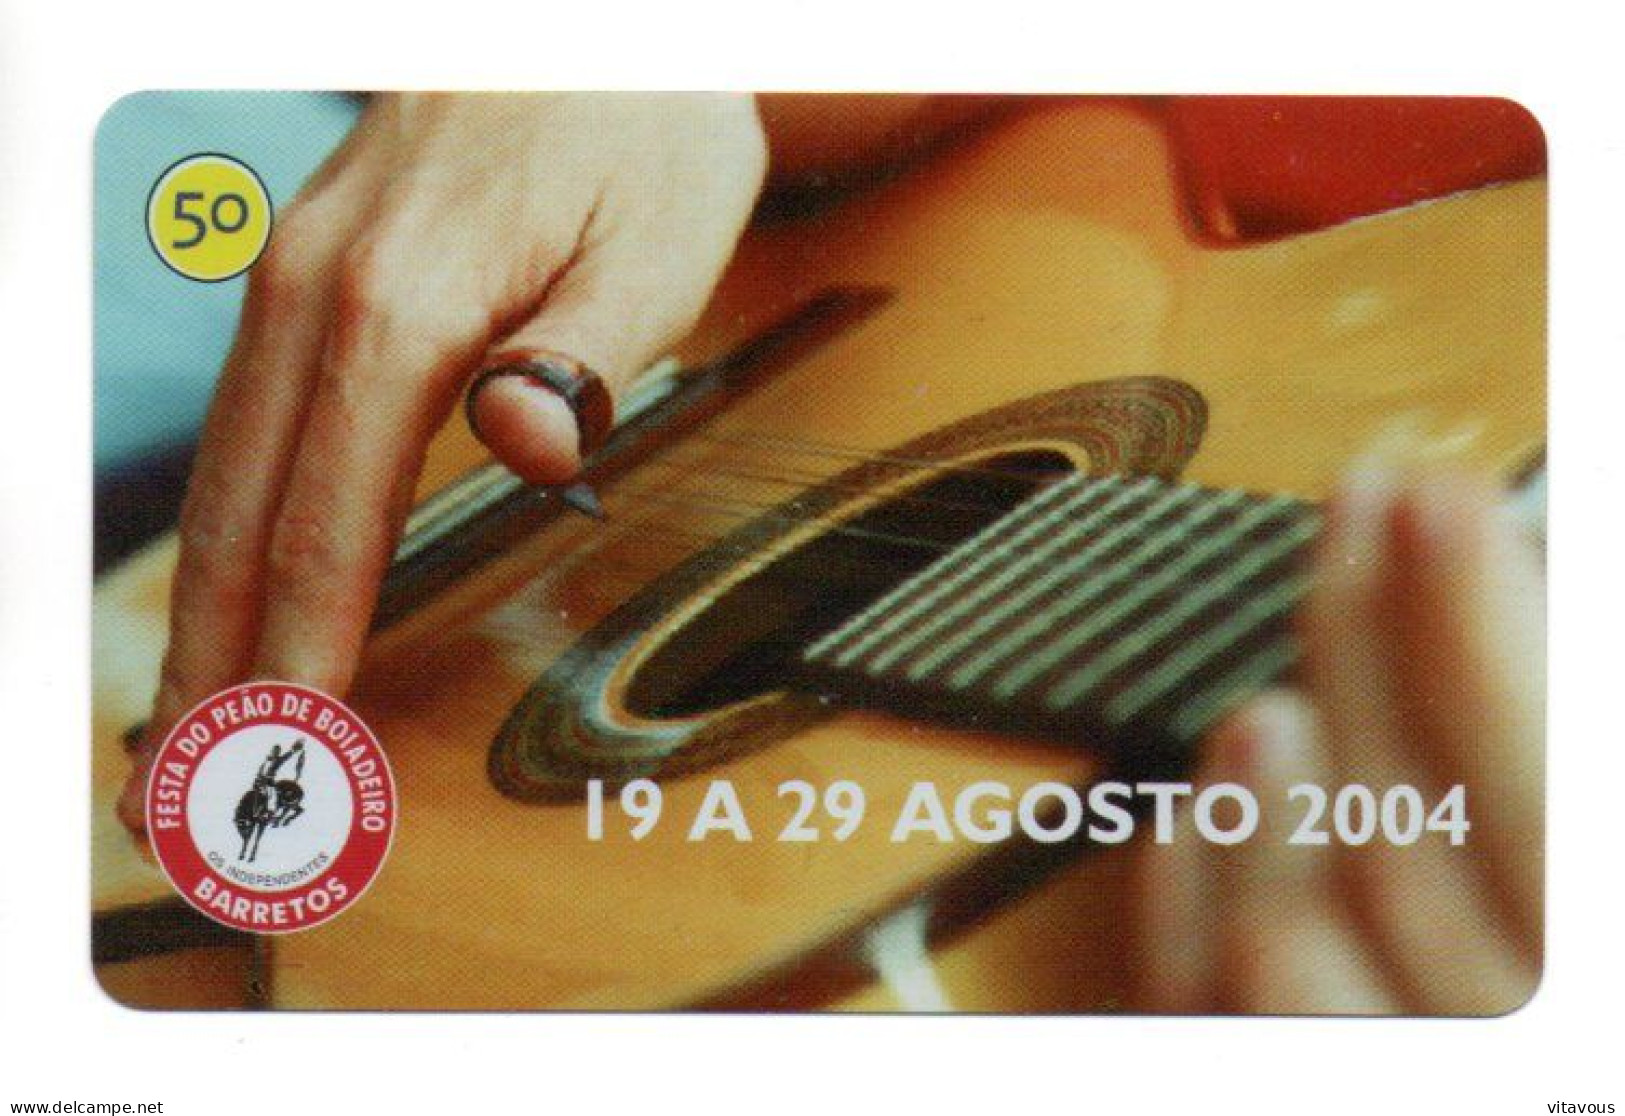 Série Festa De Barretos Musique Télécarte Brésil Phonecard (G 1006) - Brasilien